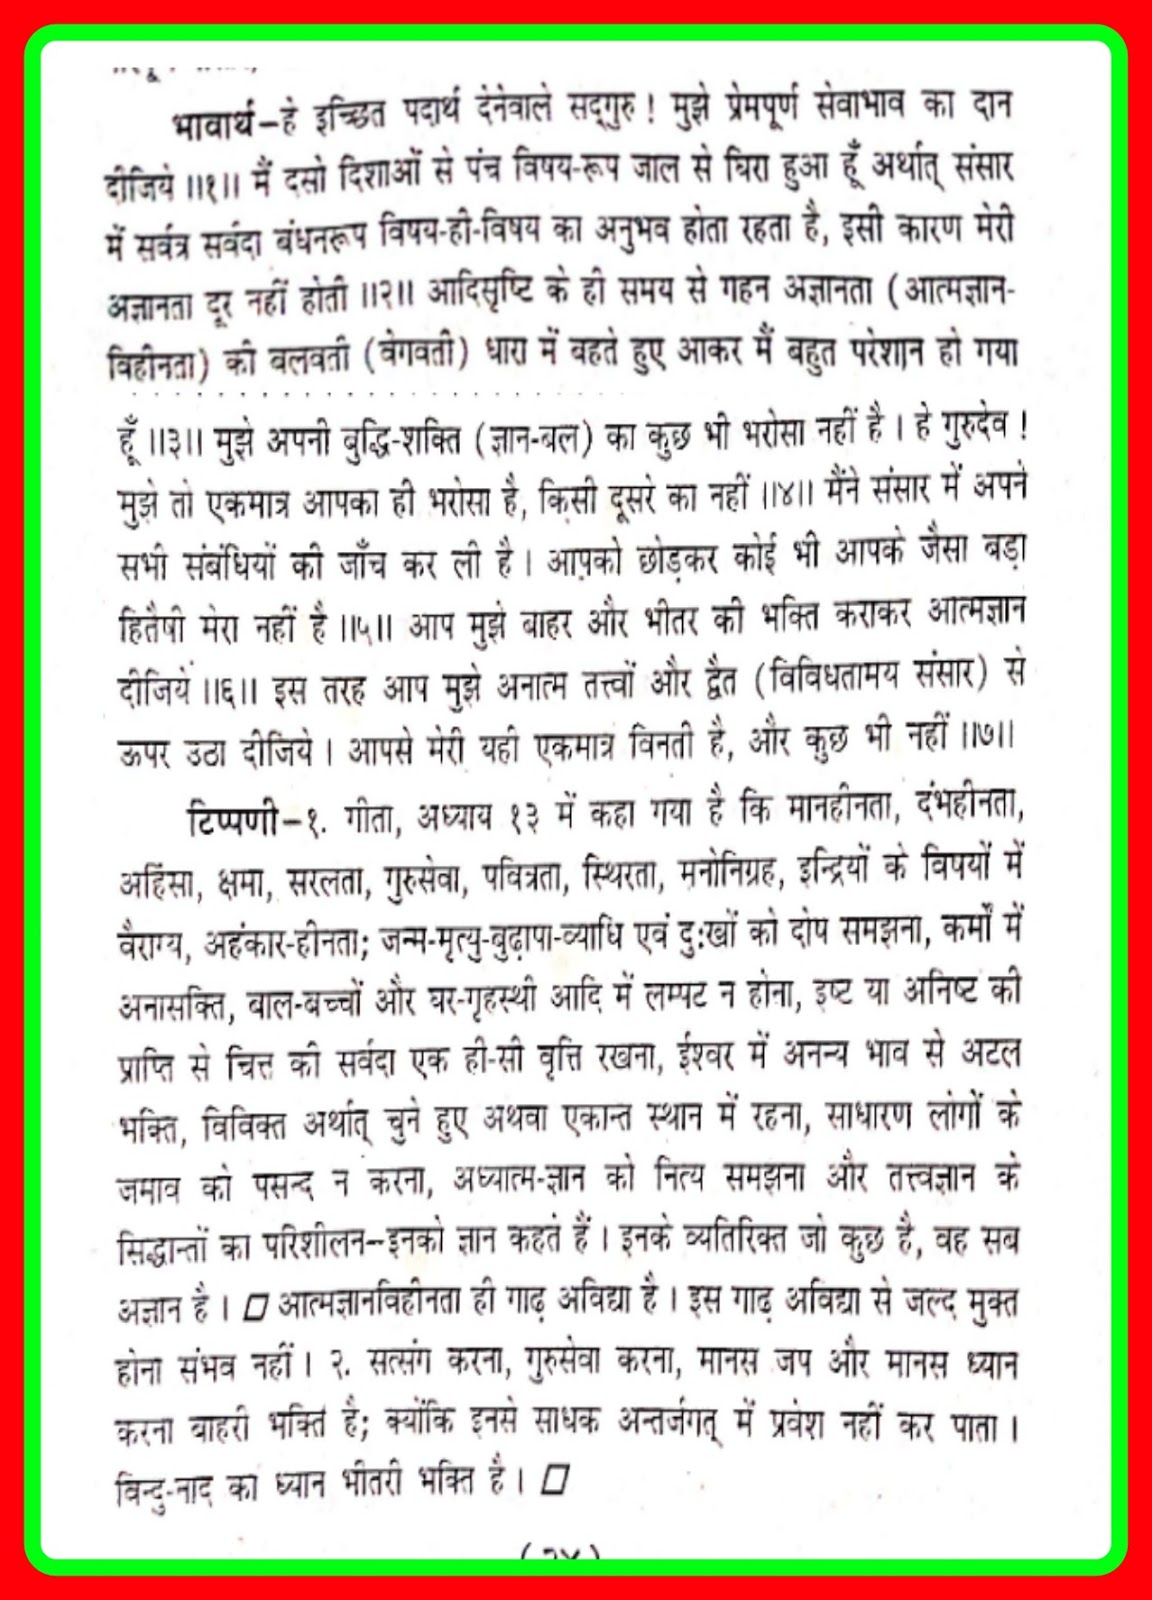 P23, (ख) Best Bhakti Songs, Bhajans, "मोहि दे दो भगती दान,...'' महर्षि मेंहीं पदावली भजन अर्थ सहित, महर्षि मेंहीं पदावली पद 23 अर्थ सहित चित्र दो